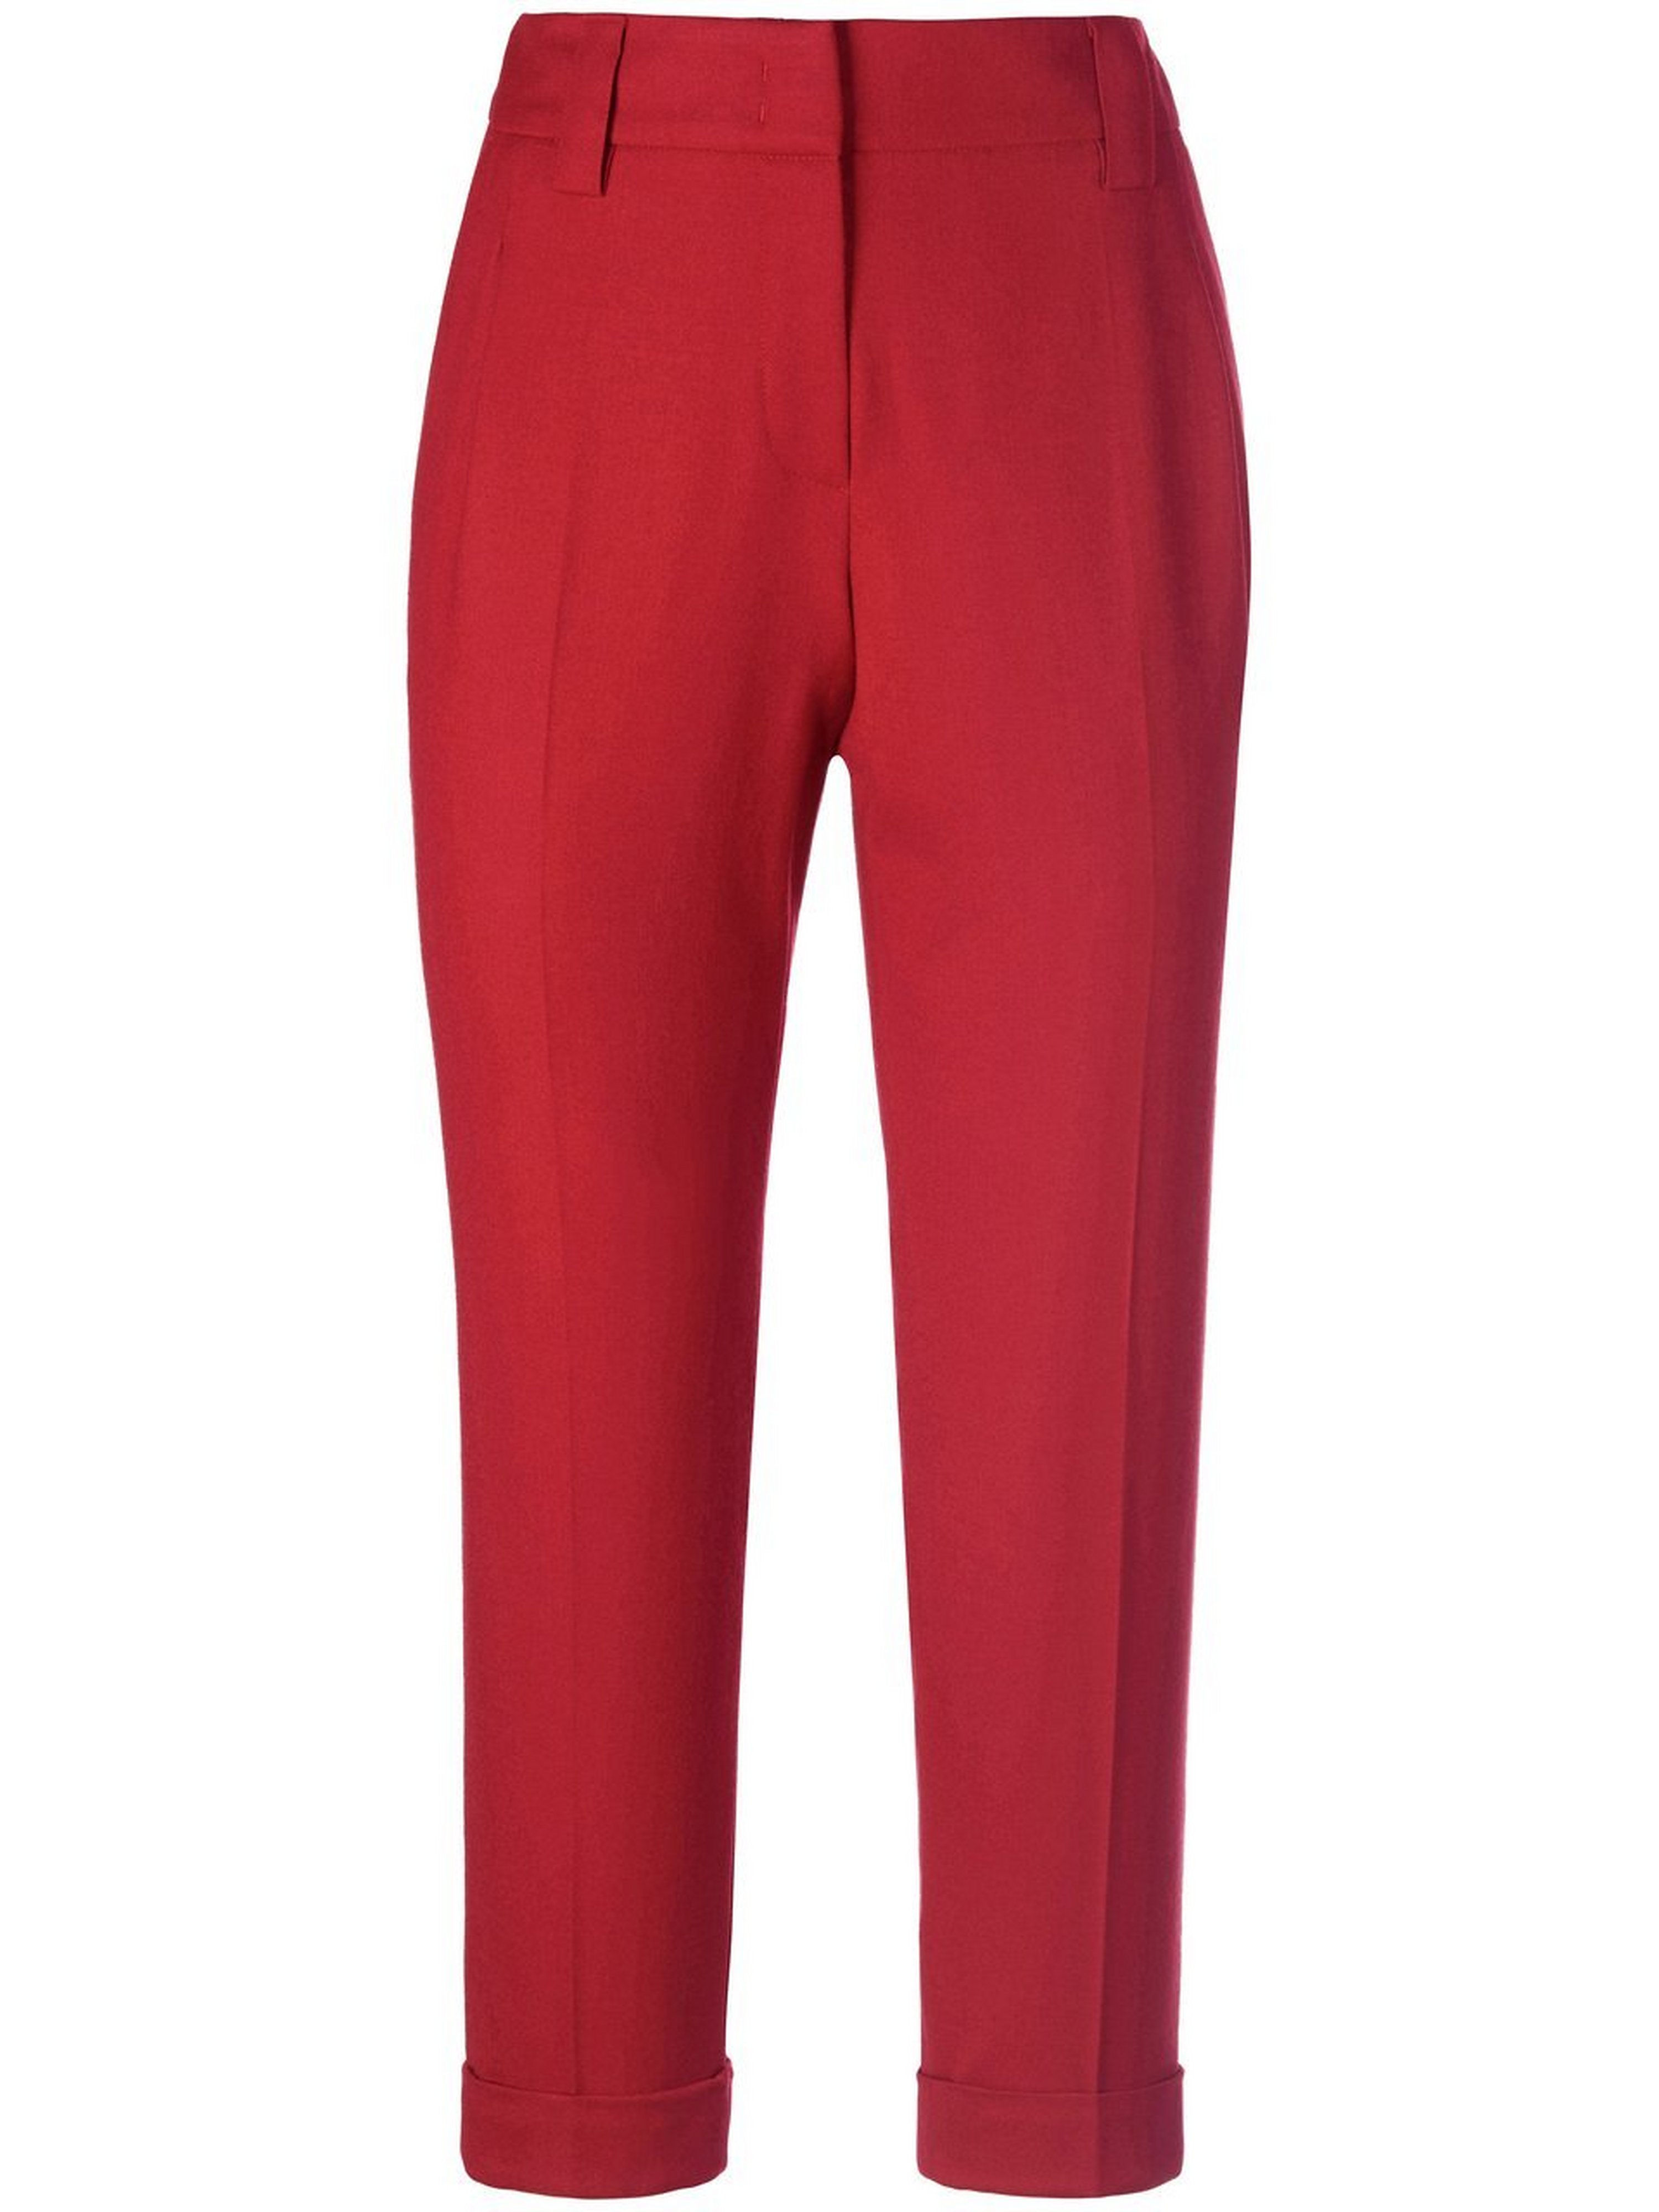 Le pantalon nouvelle longueur mode  Fadenmeister Berlin rouge taille 46